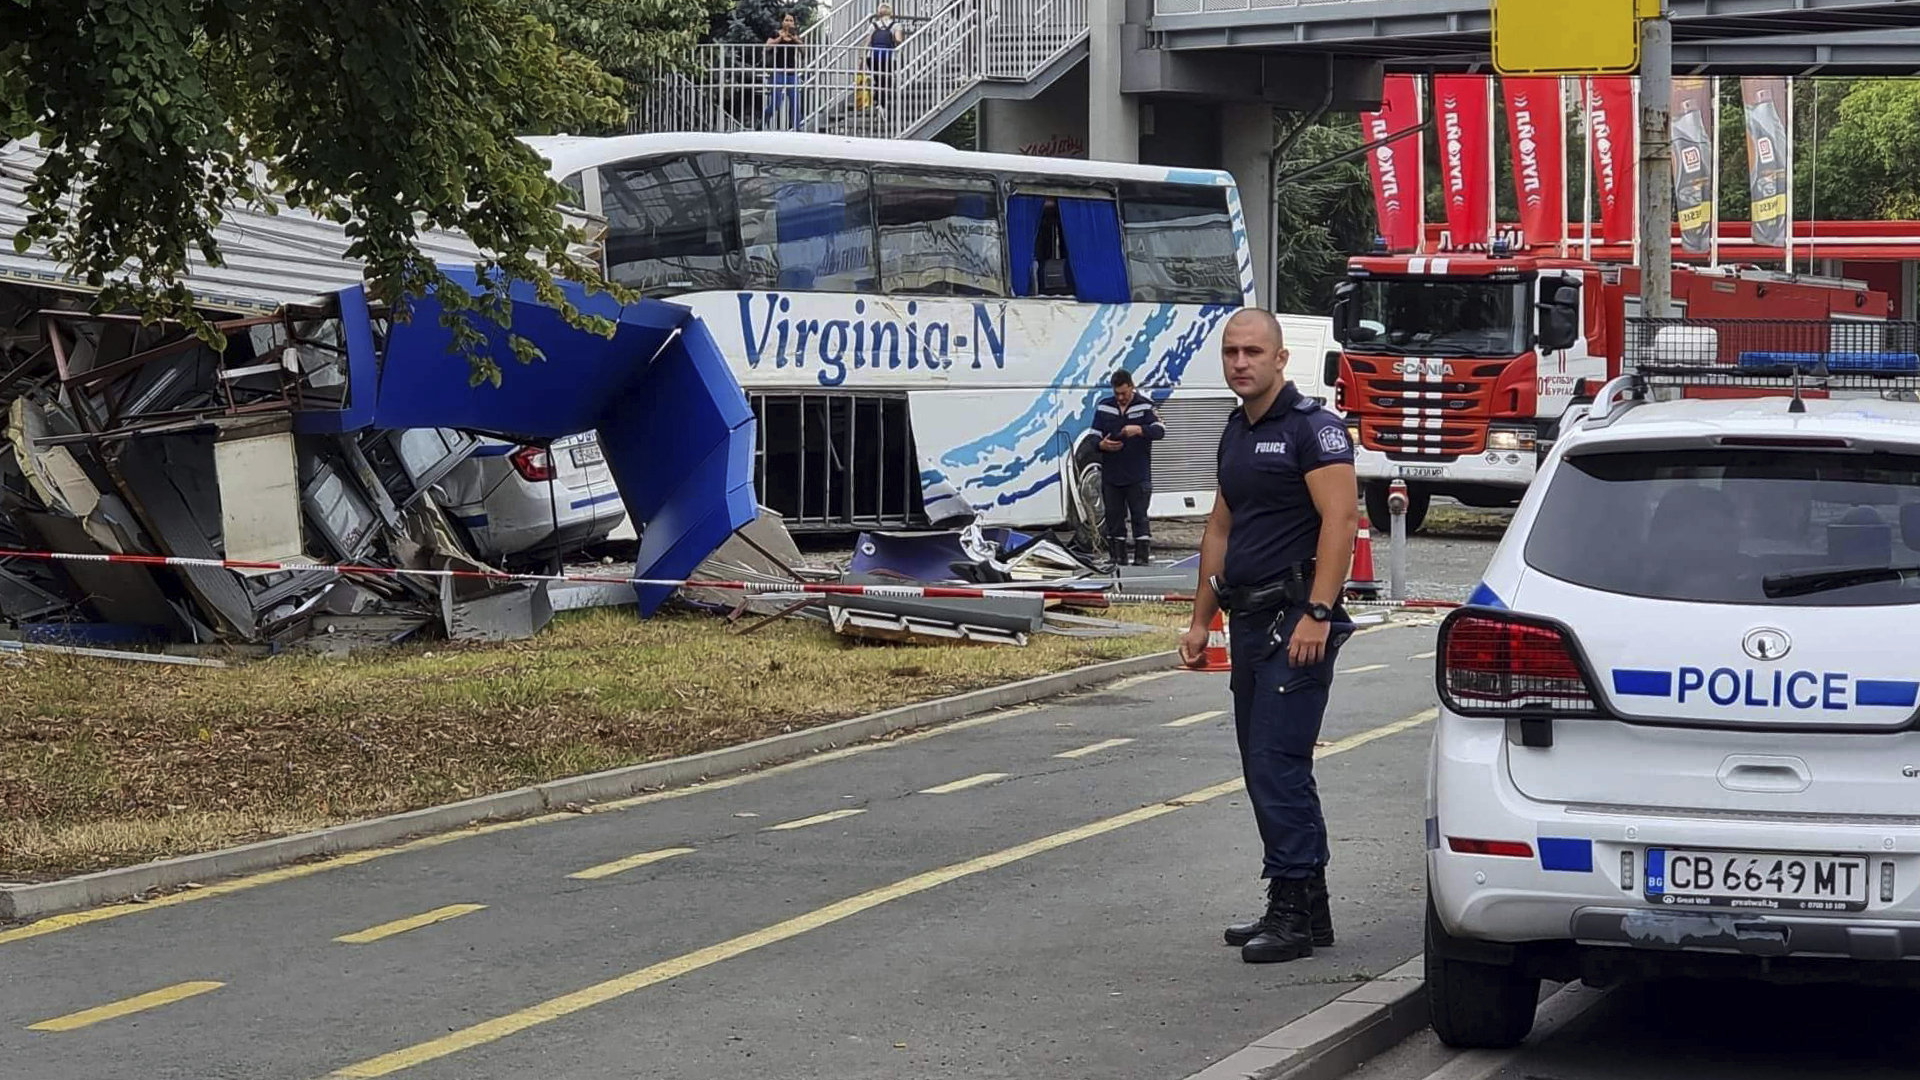 In Burgas (Bulgarien) stehen Polizisten und Rettungskräfte nach einem tödlichen Unfall nach einer Verfolgungsjagd am Unfallort. | AP